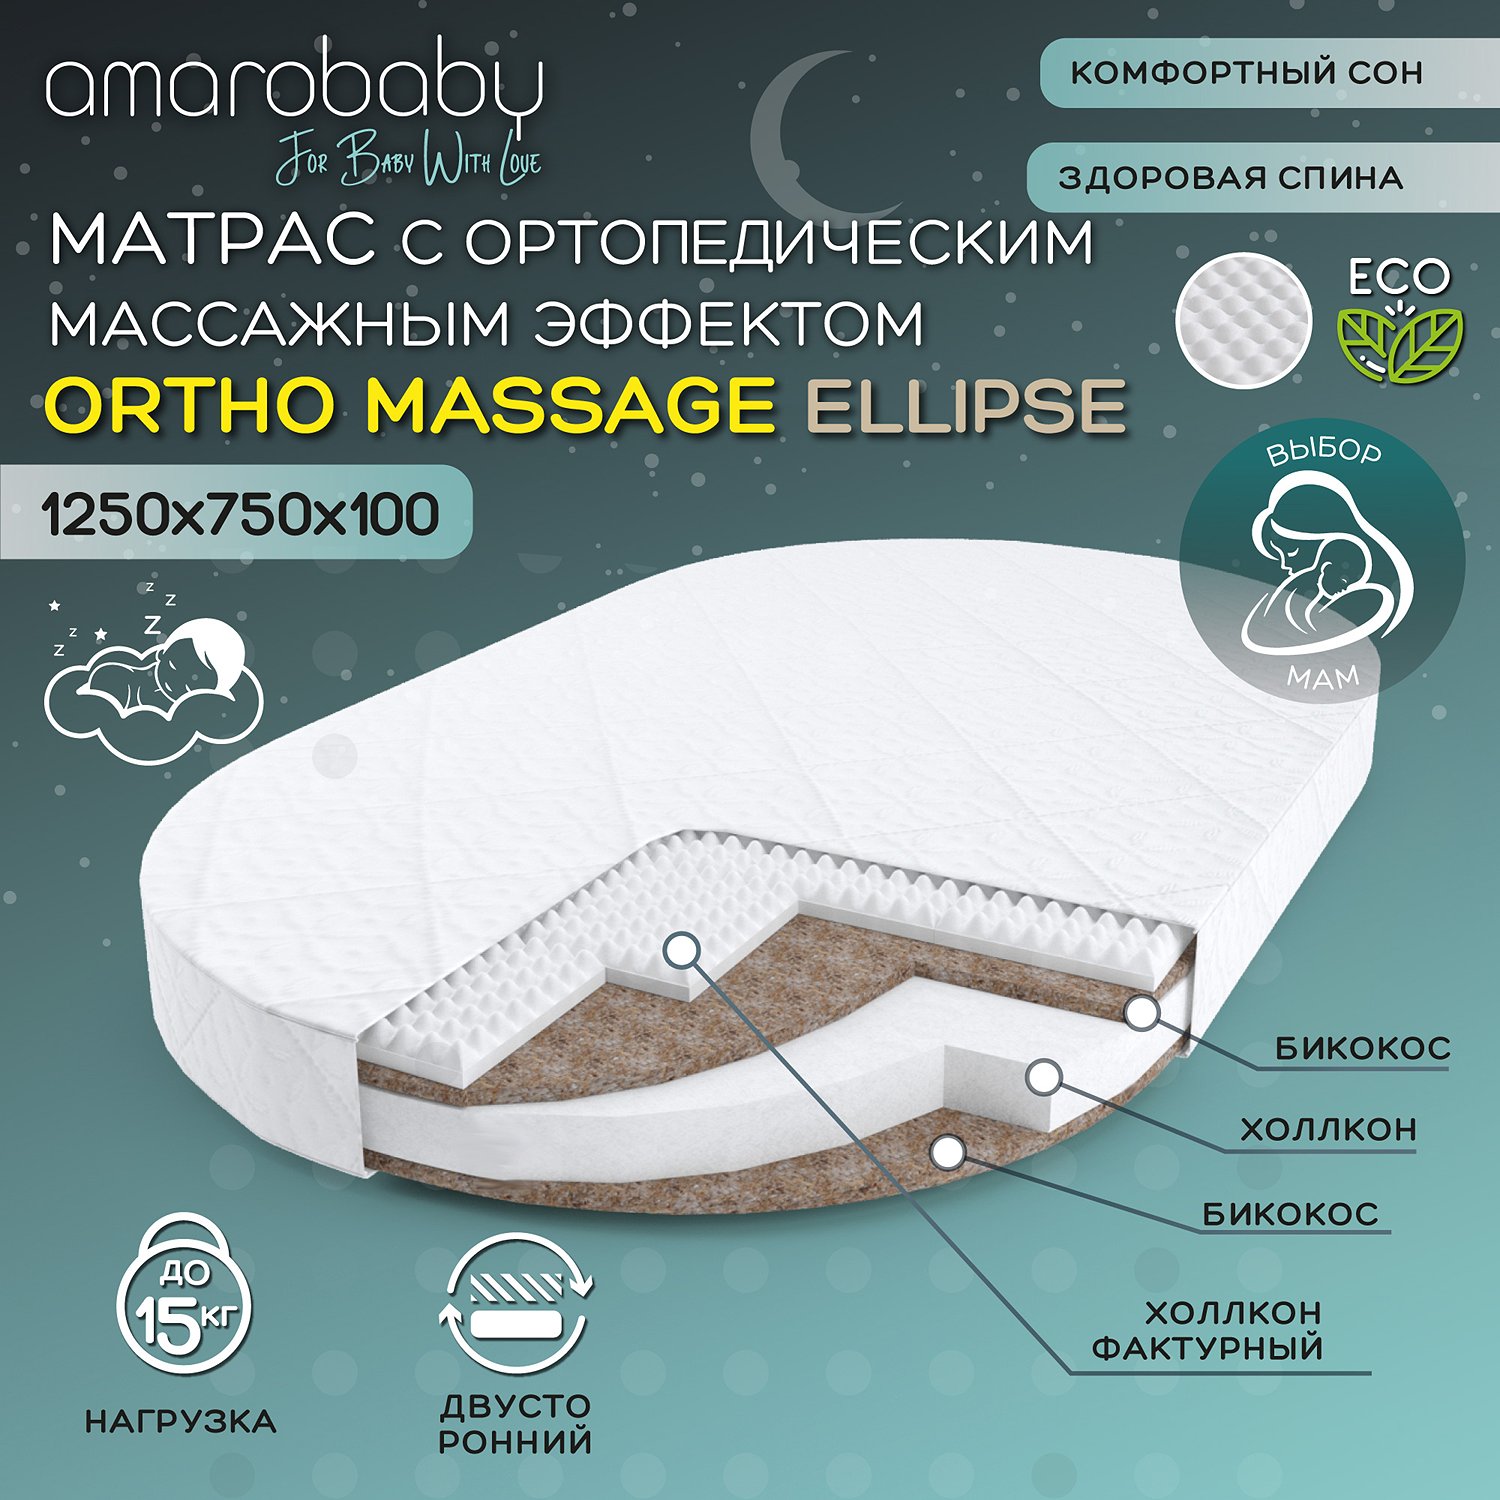 Матрас Amarobaby Ortho Massage Ellipse AMARO-331275-OM - фото 2